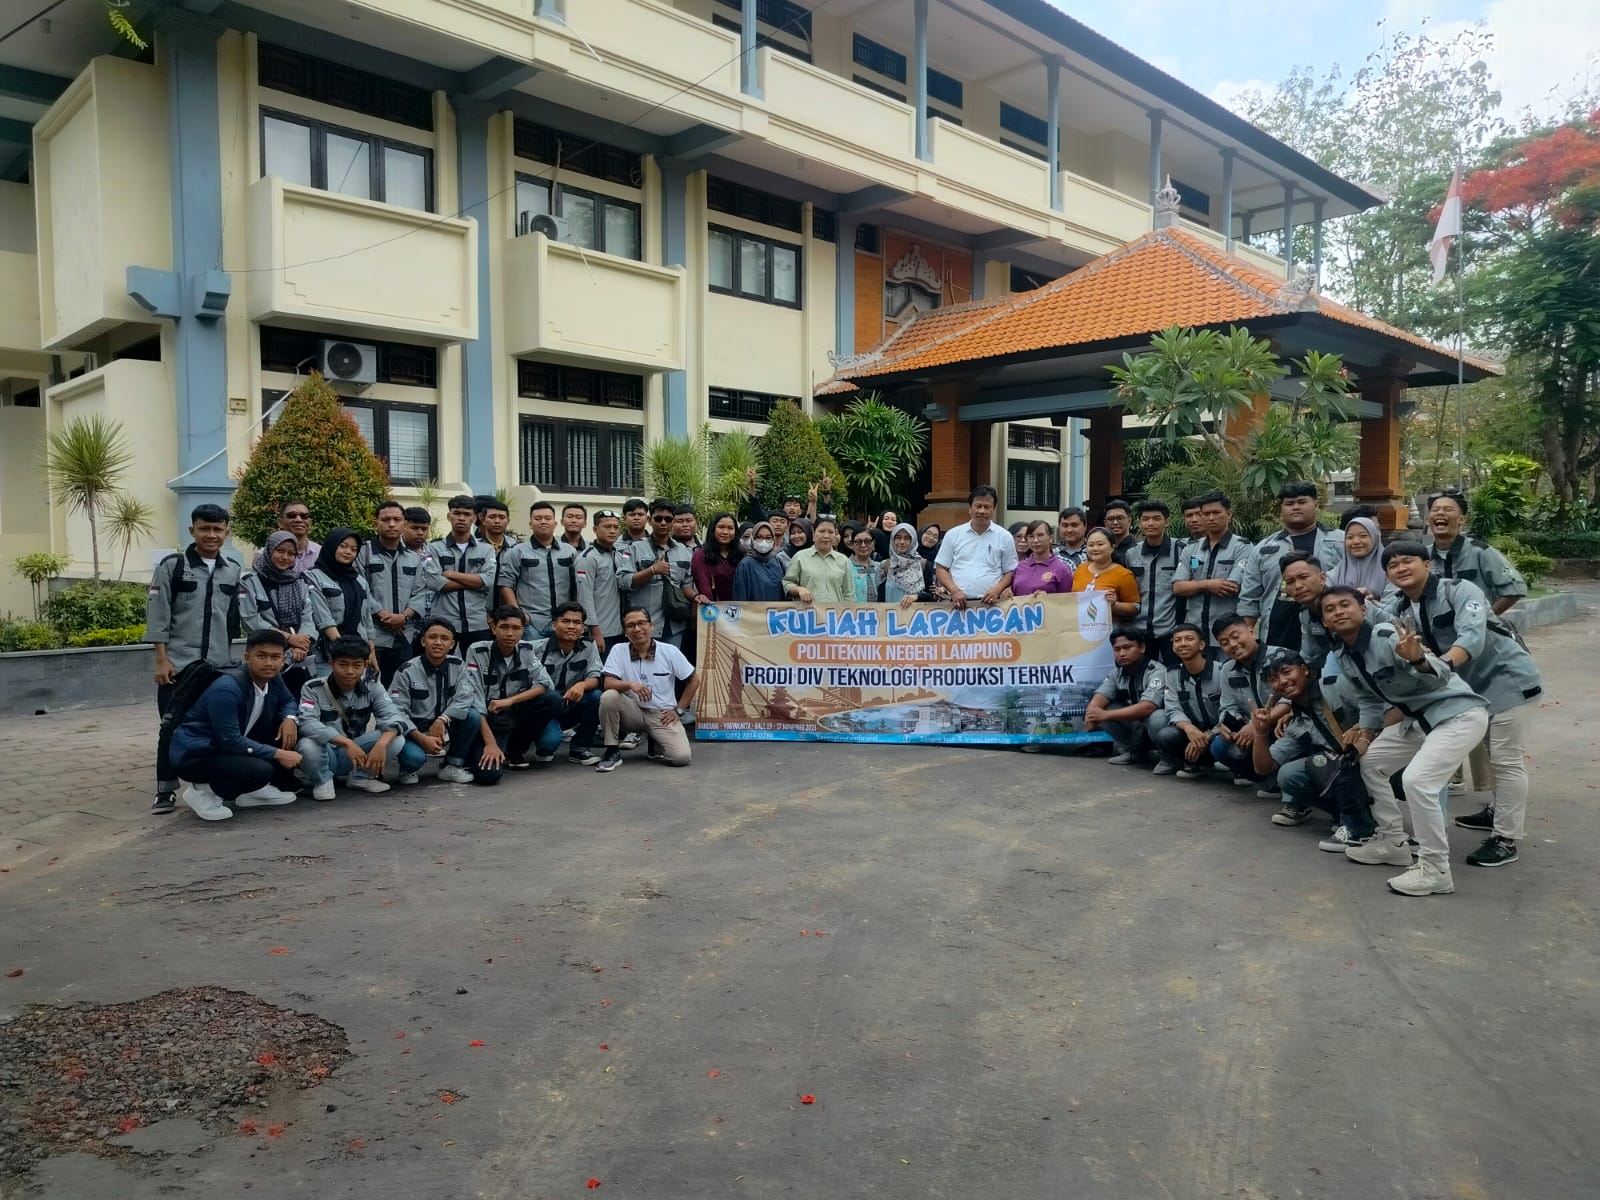 Fapet Unud Menerima Kunjungan Field Trip dari Prodi Teknologi Produksi Ternak Politeknik Negeri Lampung